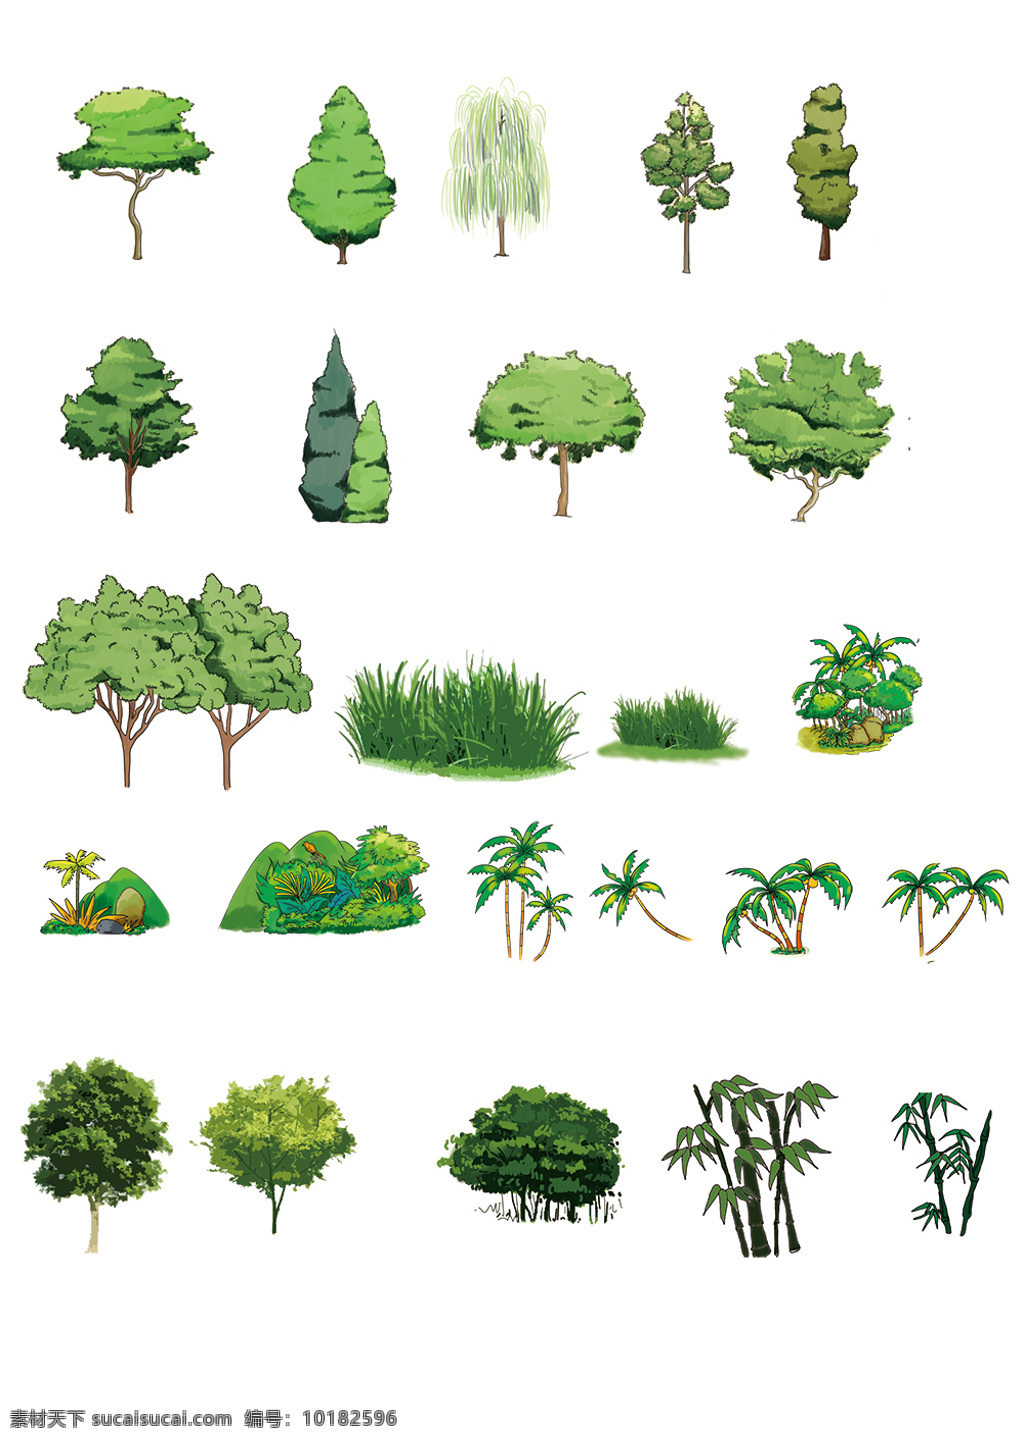 卡通树木 卡通版树木 各种树木素材 绿色树木 白色